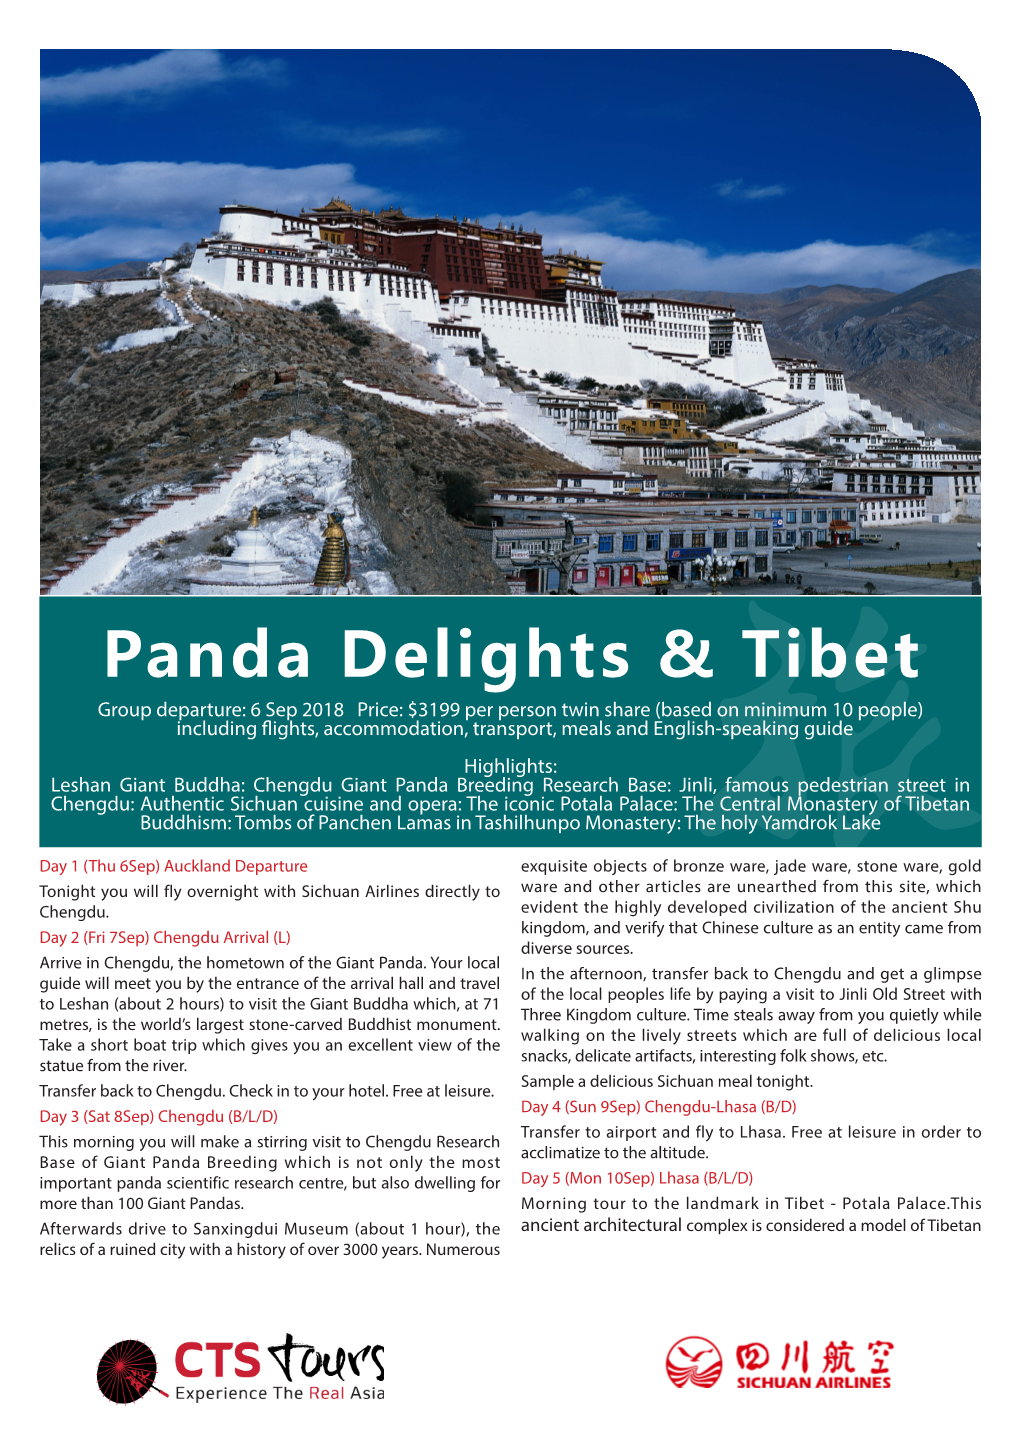 Panda Delights & Tibet 2018